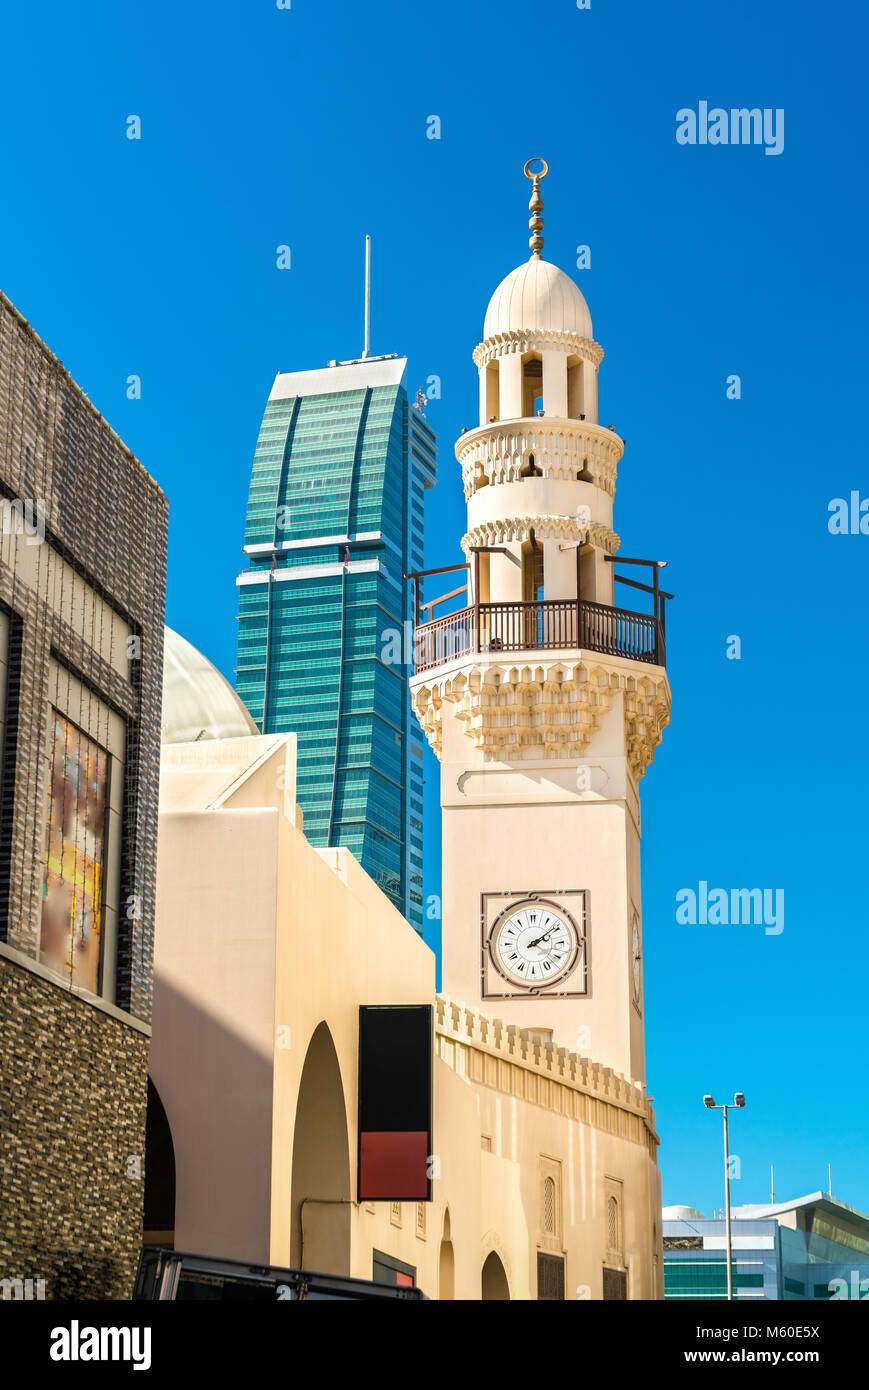 Yateem mosquée dans la vieille ville de Manama, la capitale de Bahreïn Banque D'Images